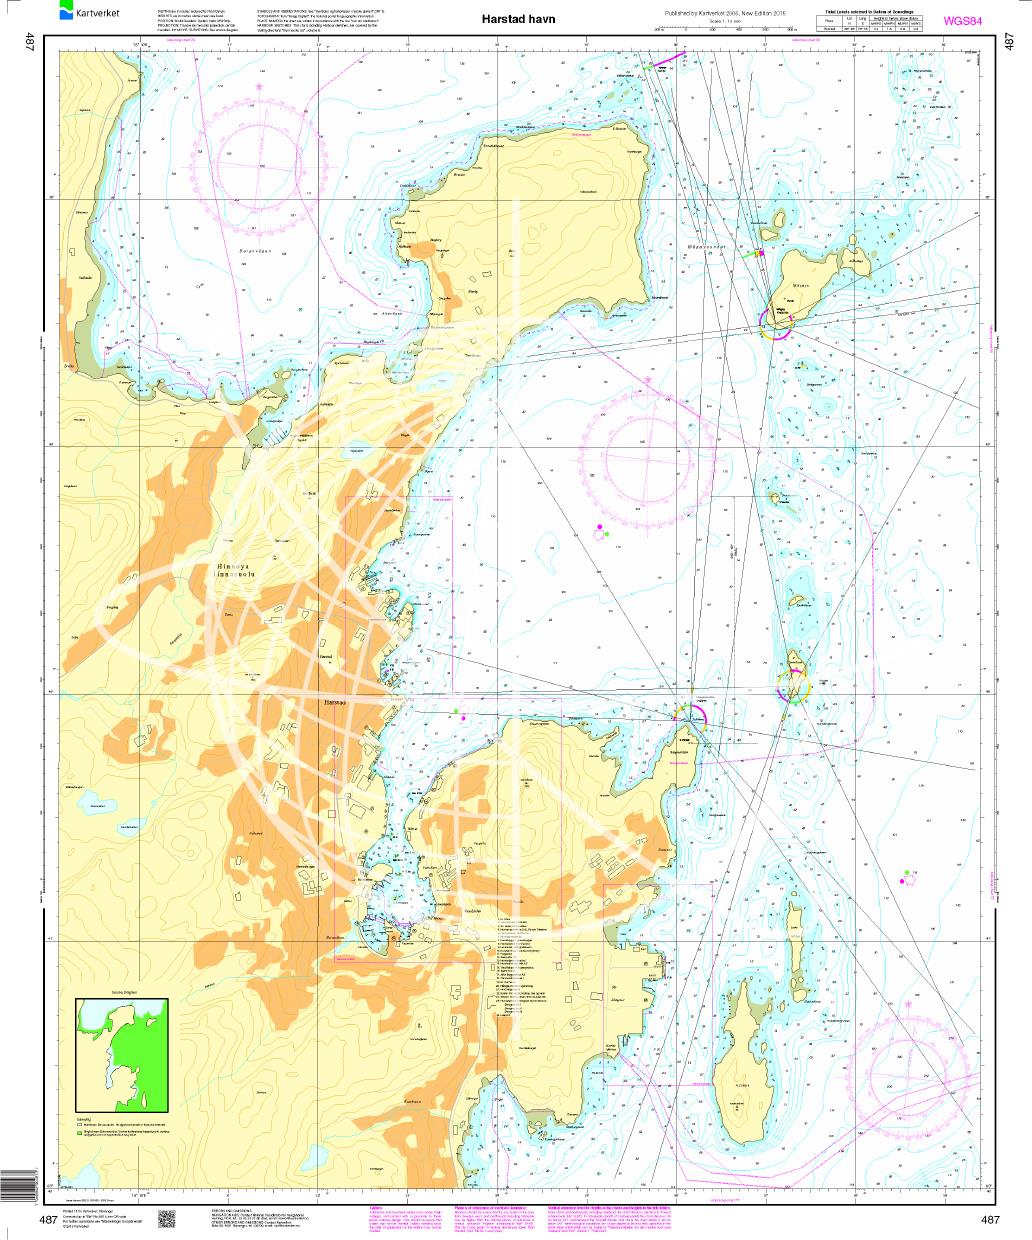 Norwegen N 487 Troms og Finnmark mit Harstad havn